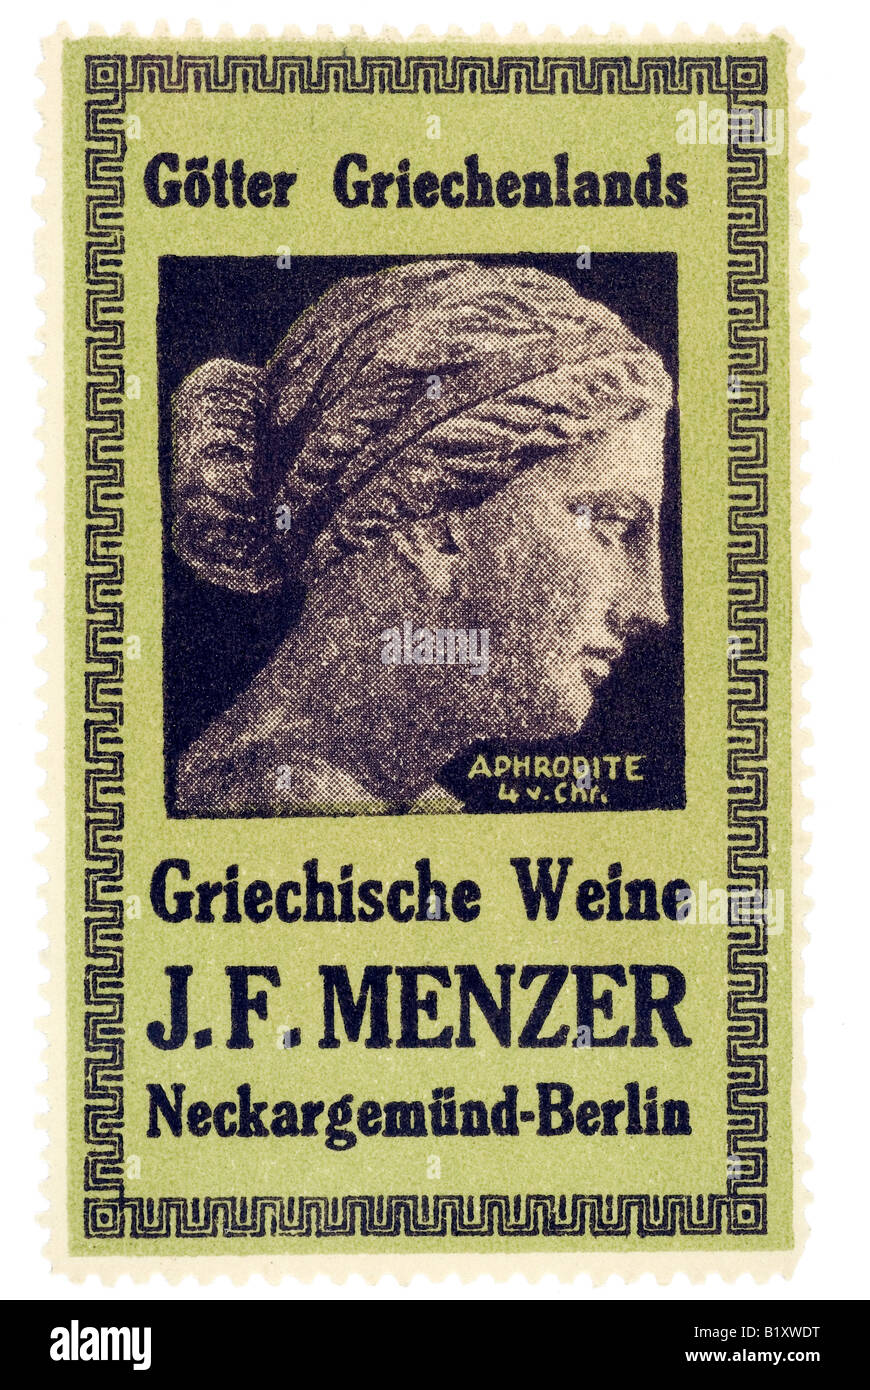 trading stamp wine Götter Griechenlands Griechische Weine J F Menzer Neckargemünd Berlin Aphrodite Stock Photo